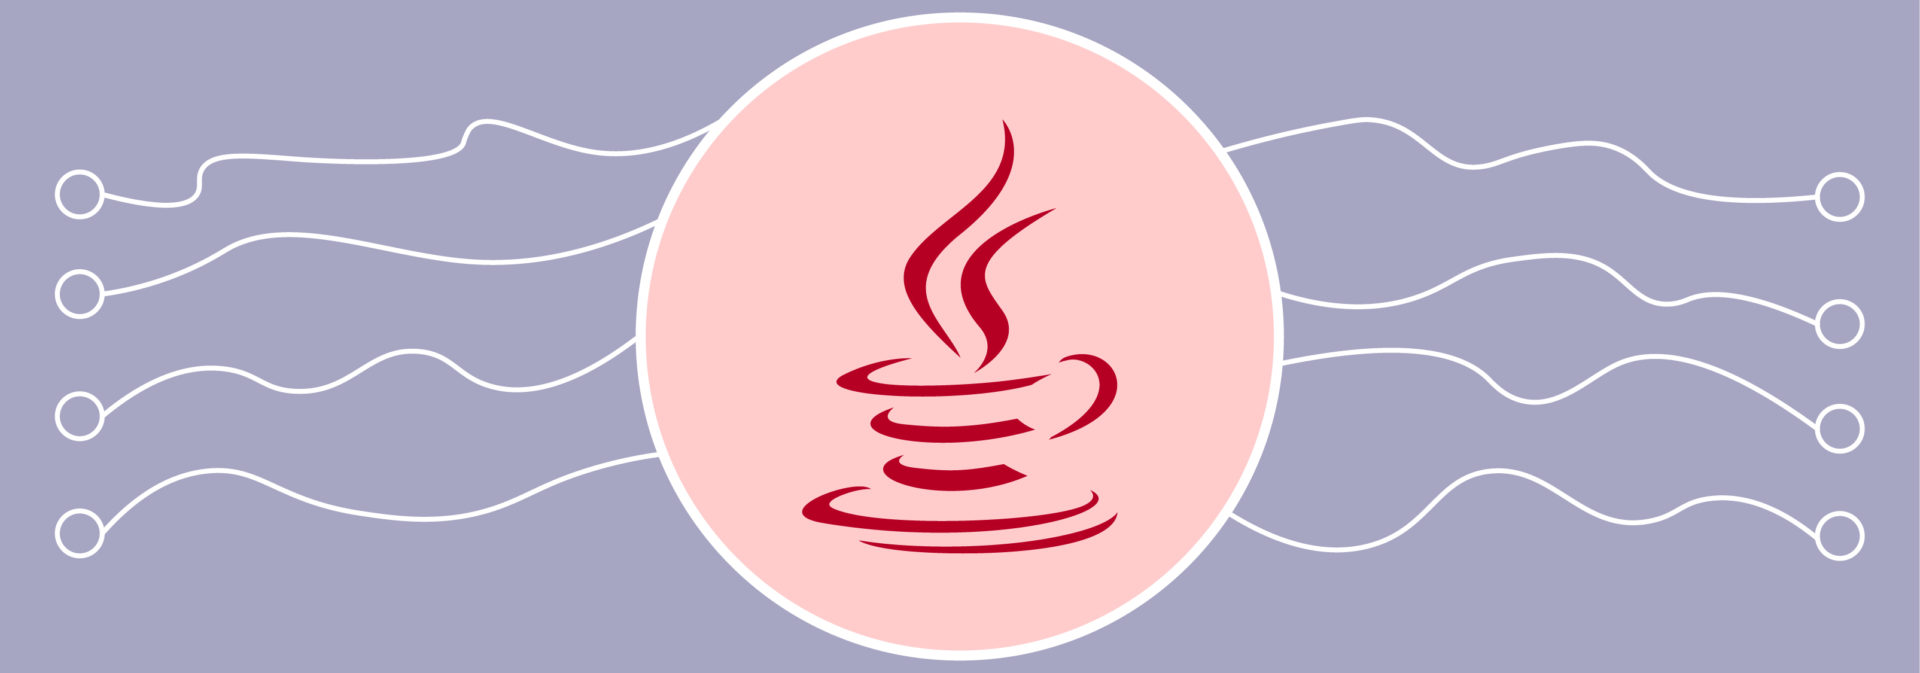 Многопоточное программирование в Java 8. Часть первая. Параллельное выполнение кода с помощью потоков